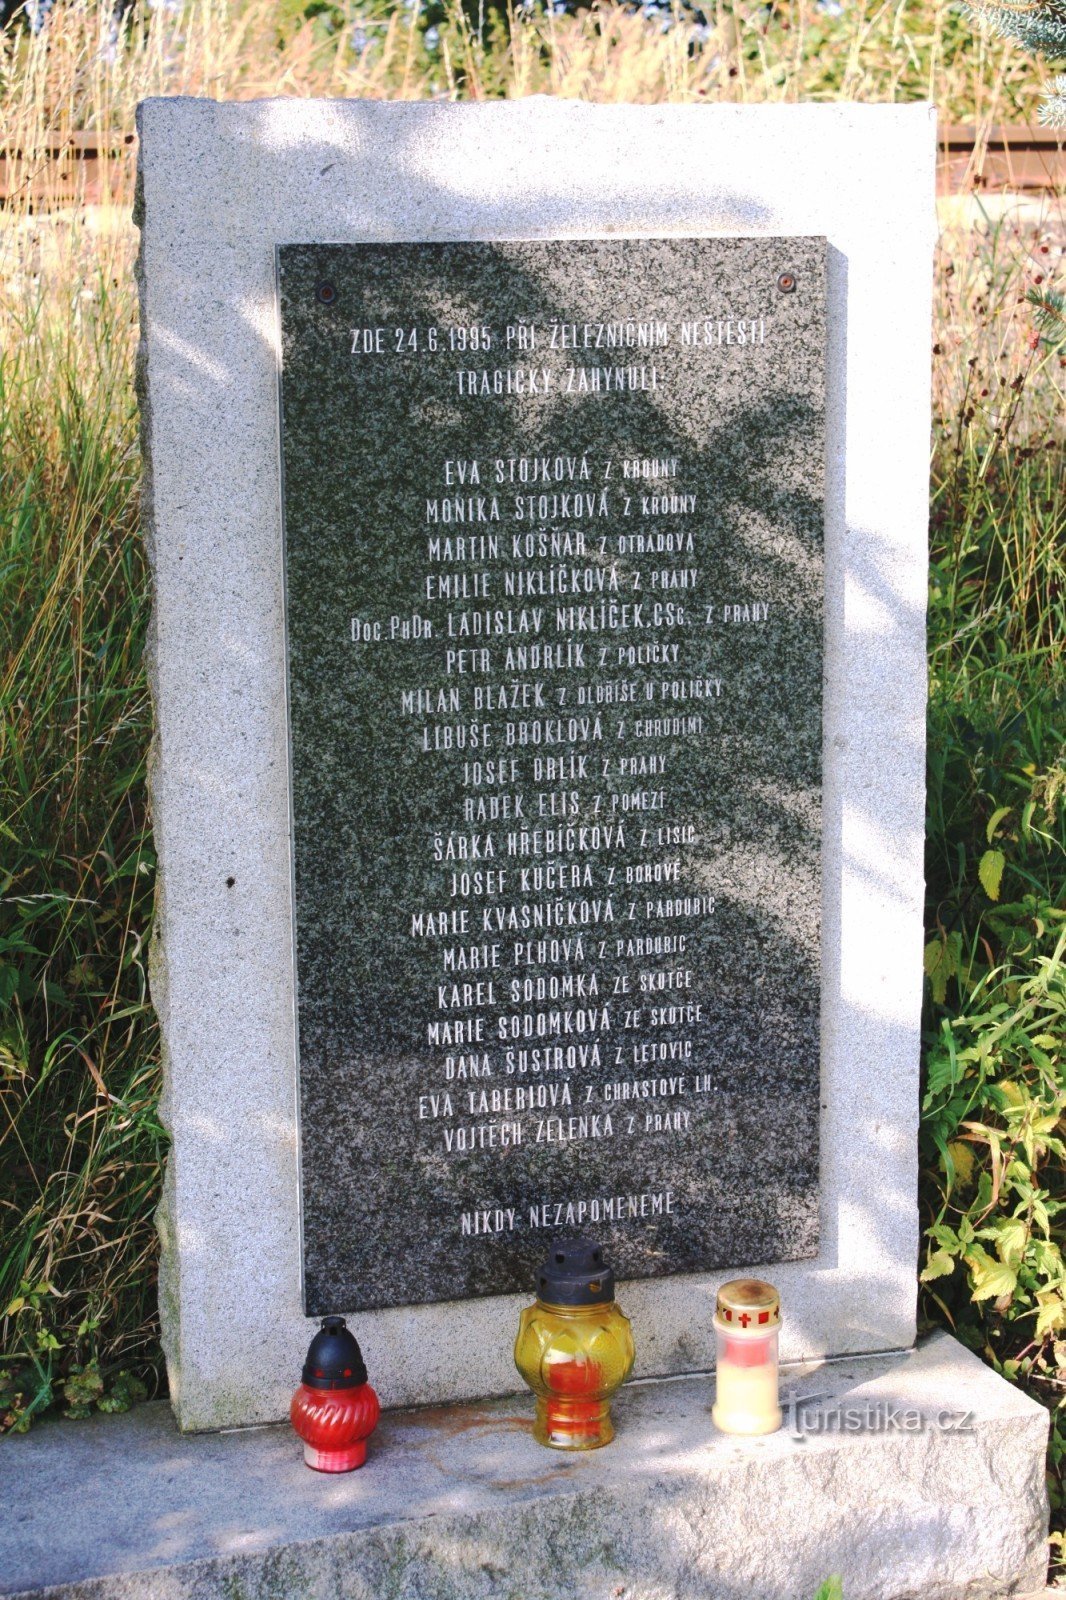 Targa commemorativa con elenco delle vittime